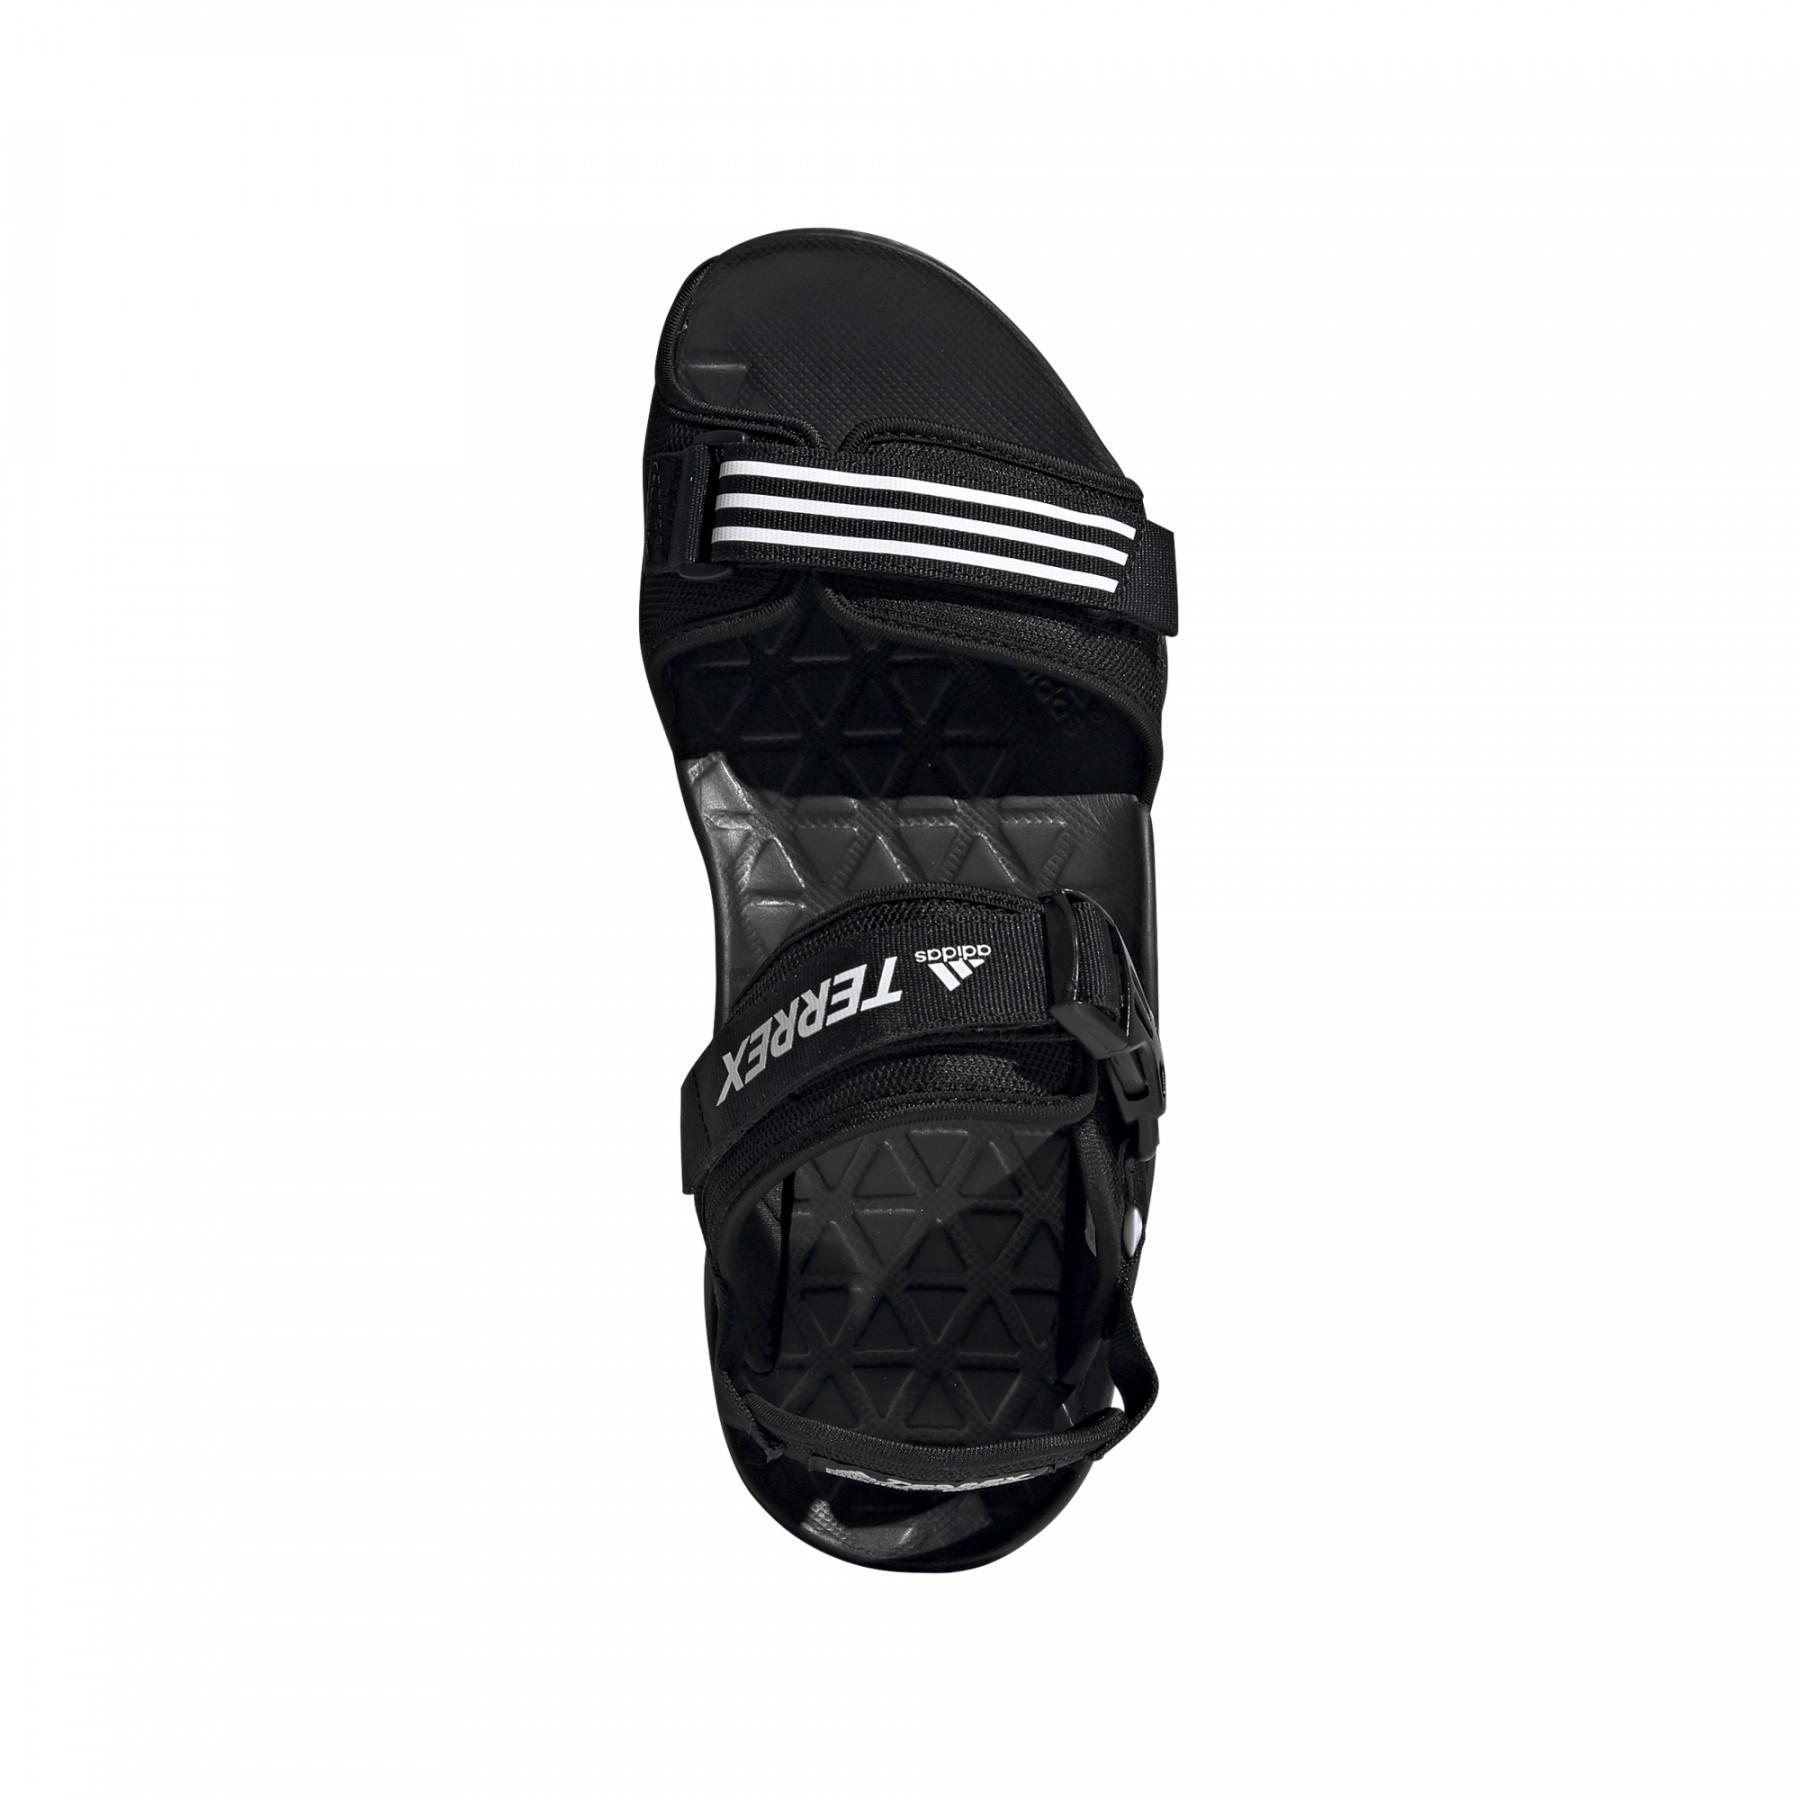 Sandália adidas Cyprex Ultra DLX